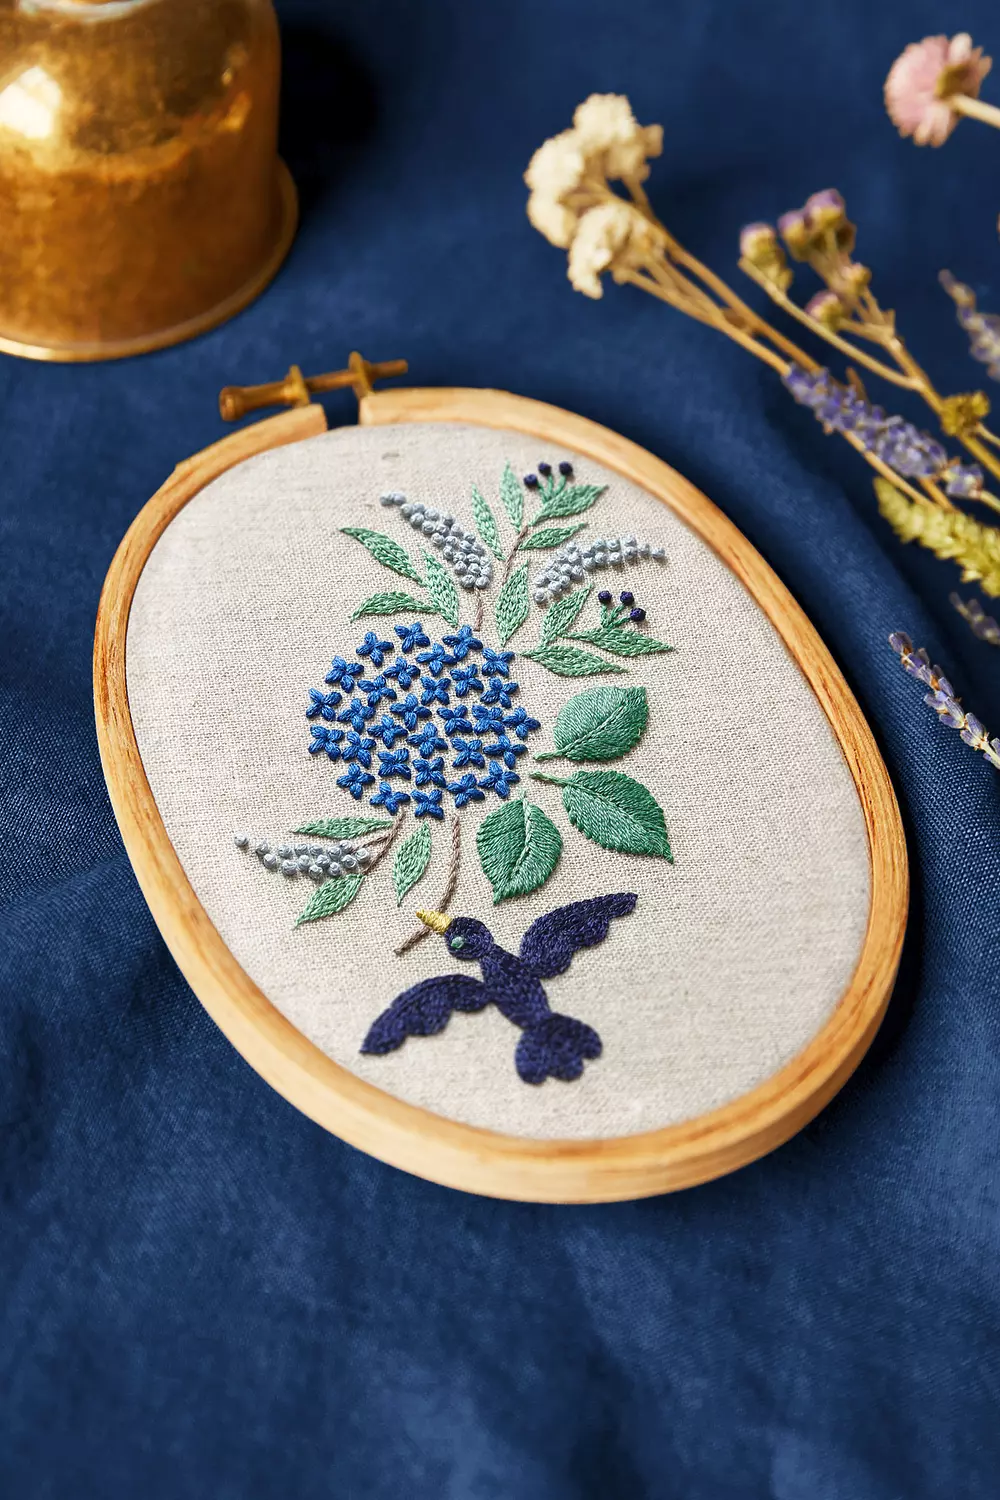 Intermediate DIY Embroidery Kit,modern Embroidery Kit Cross Stitch,hand  Embroidery Kit,diy Craft Kit,diy Flower Embroidery Hoop Wall Art Kit 